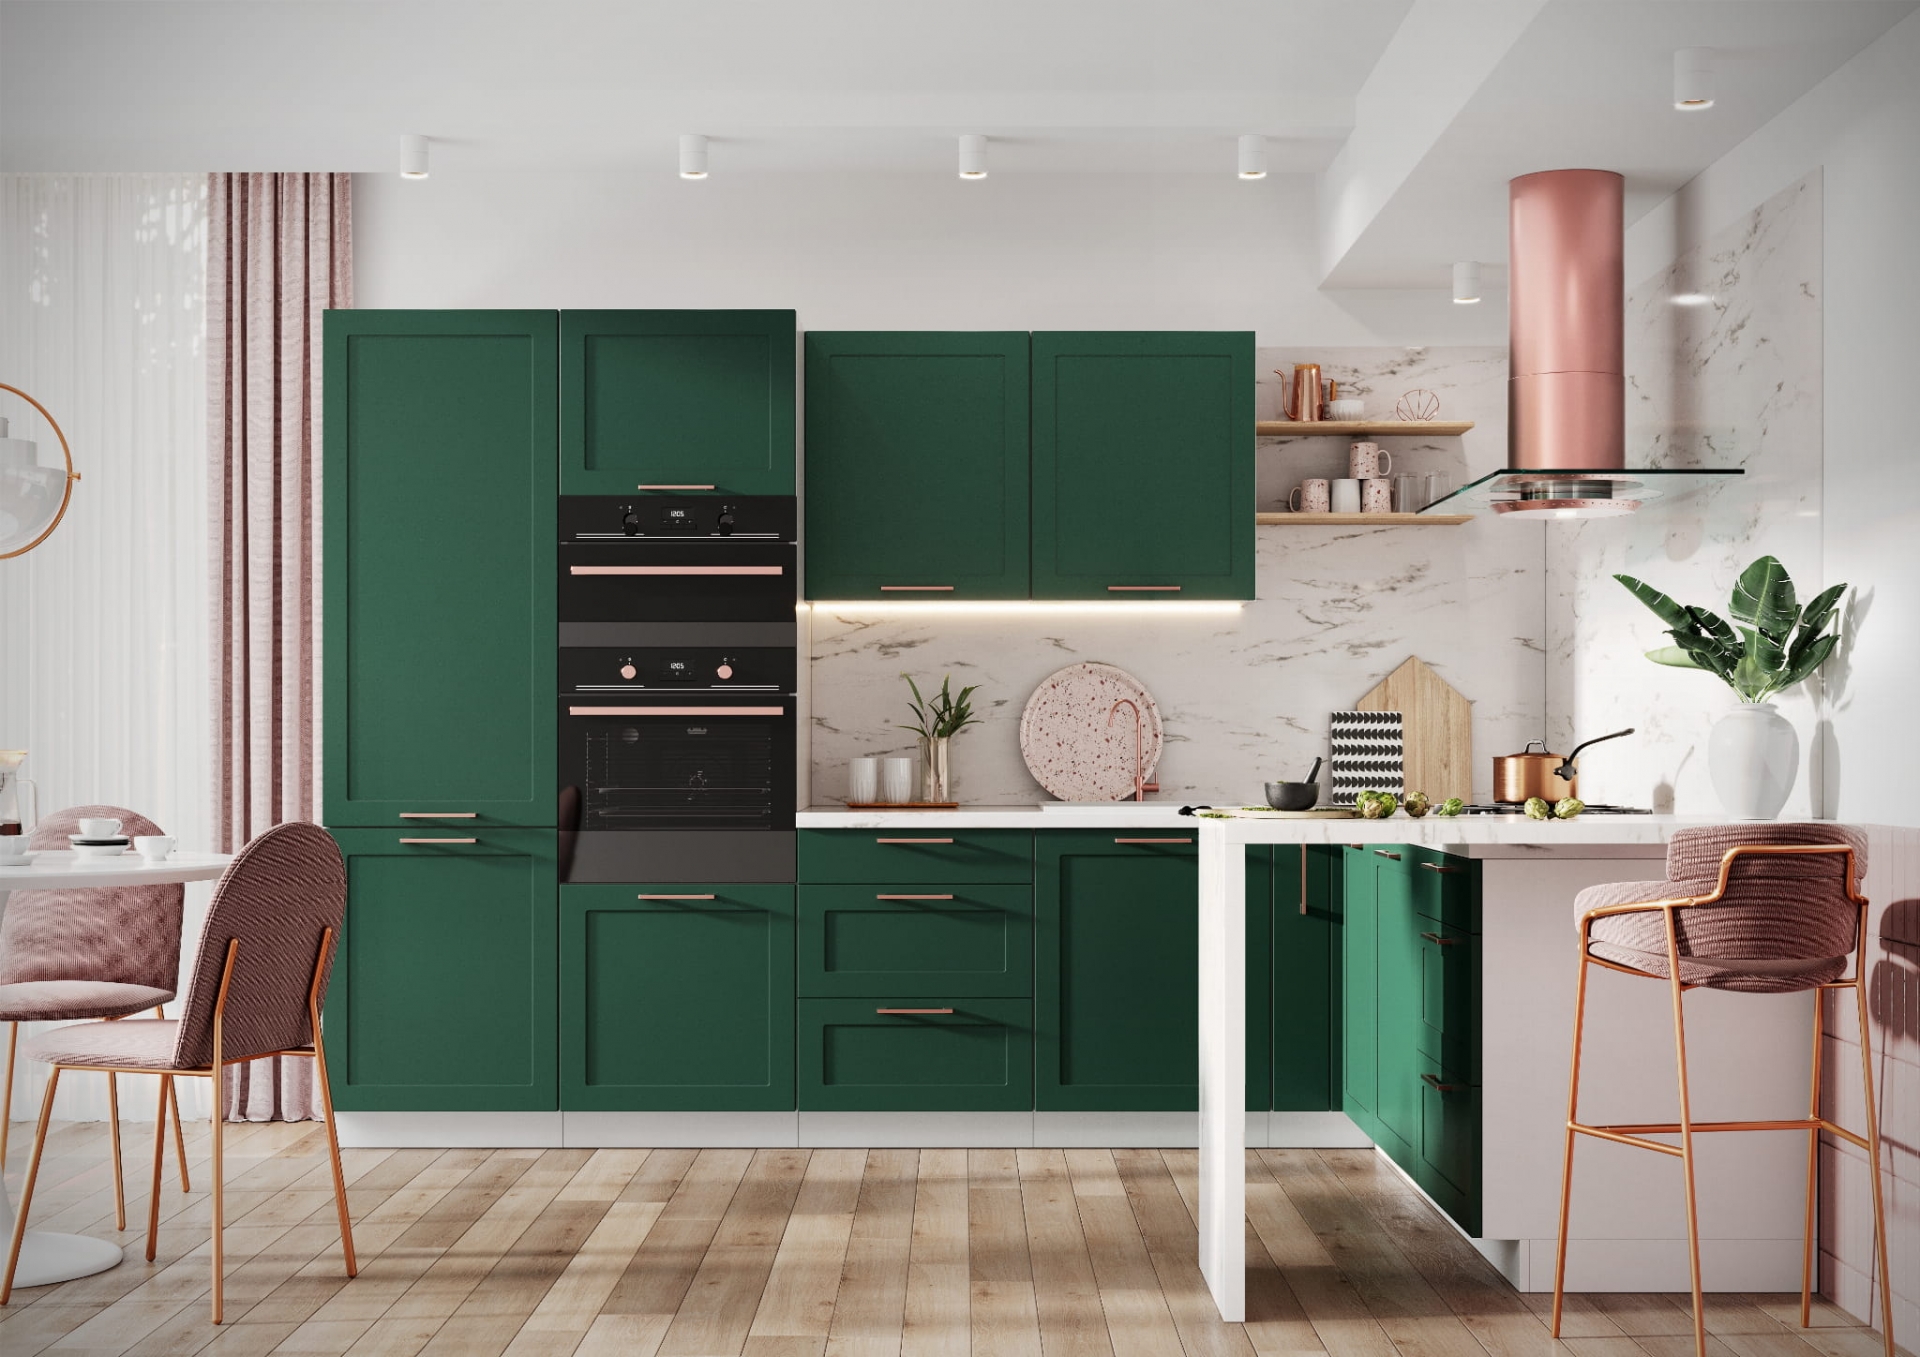 Chọn tủ bếp tối màu sẽ phân vùng phòng khách và phòng bếp bằng thị giác cực kỳ hiệu quả.